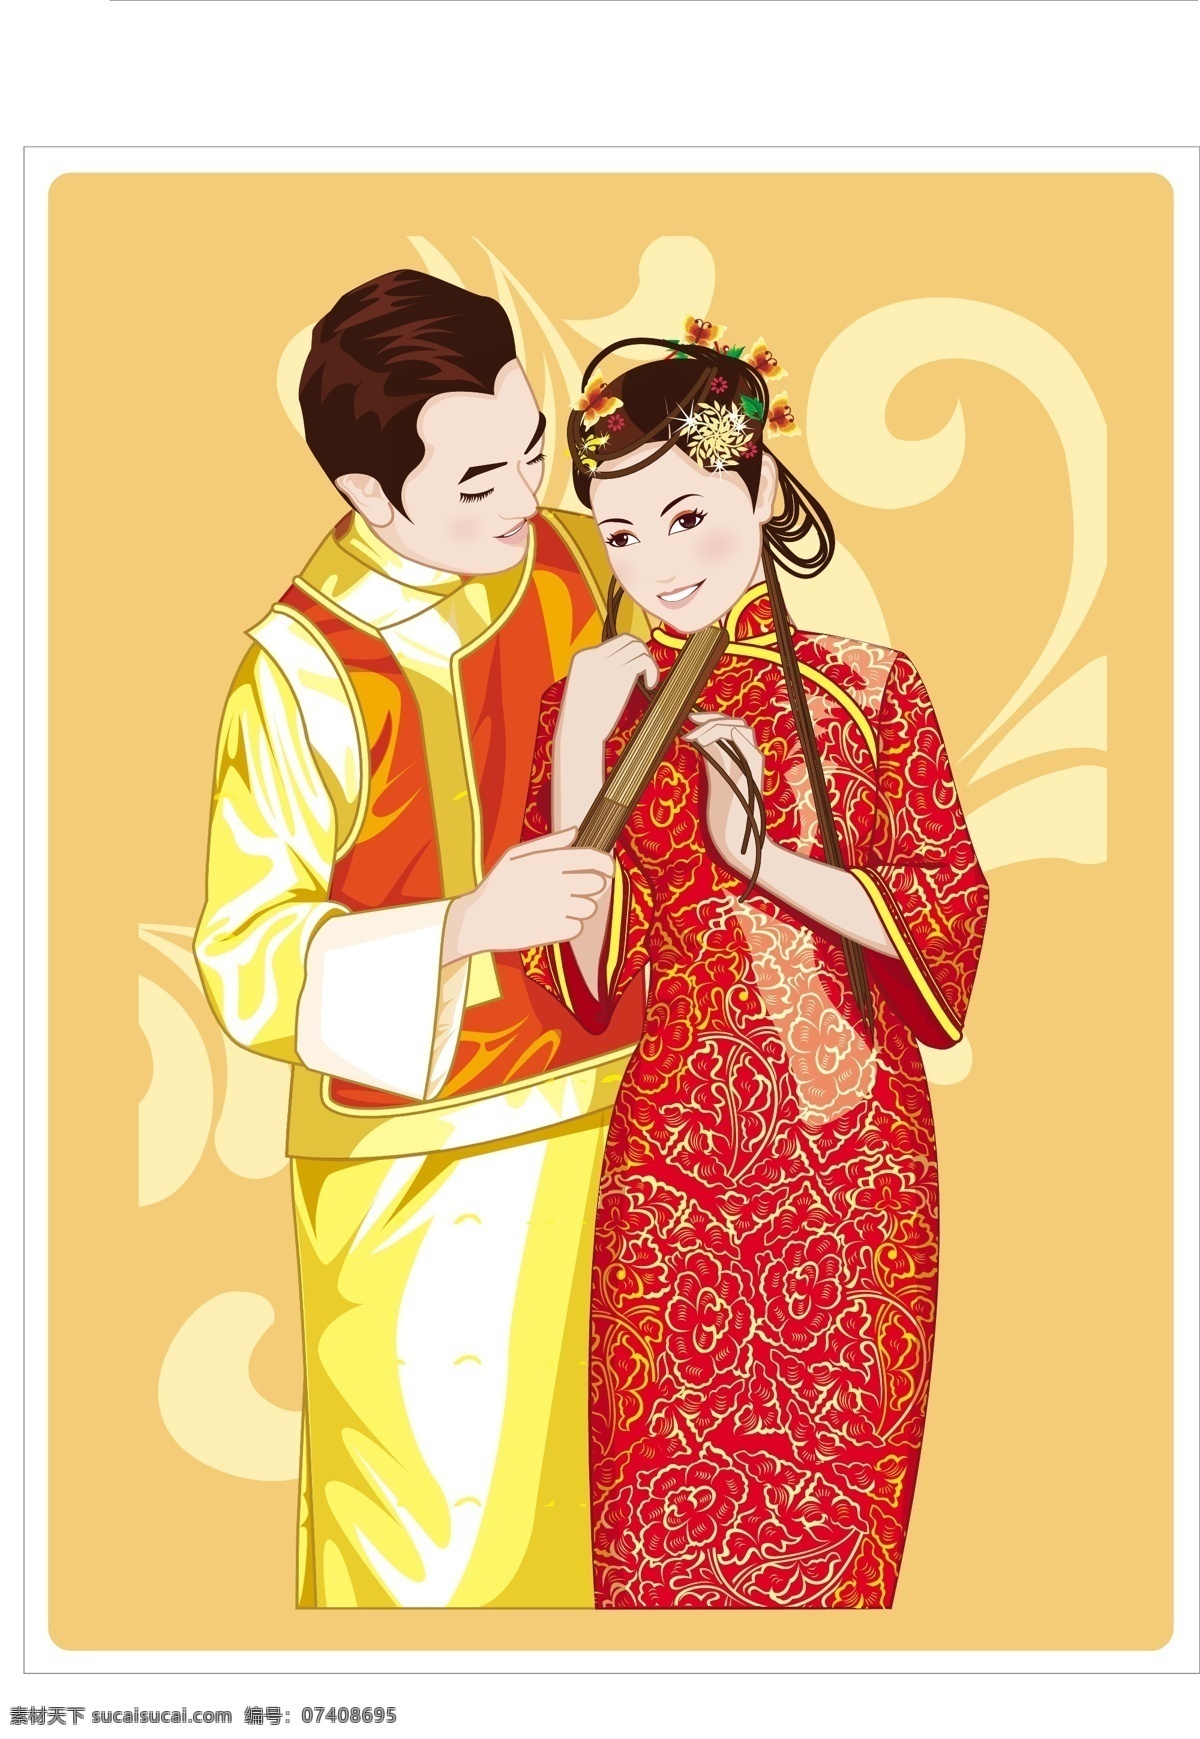 中国 传统 新婚 夫妇 矢量图 卡通素材 矢量潮流 矢量卡通 中国元素 其他矢量图